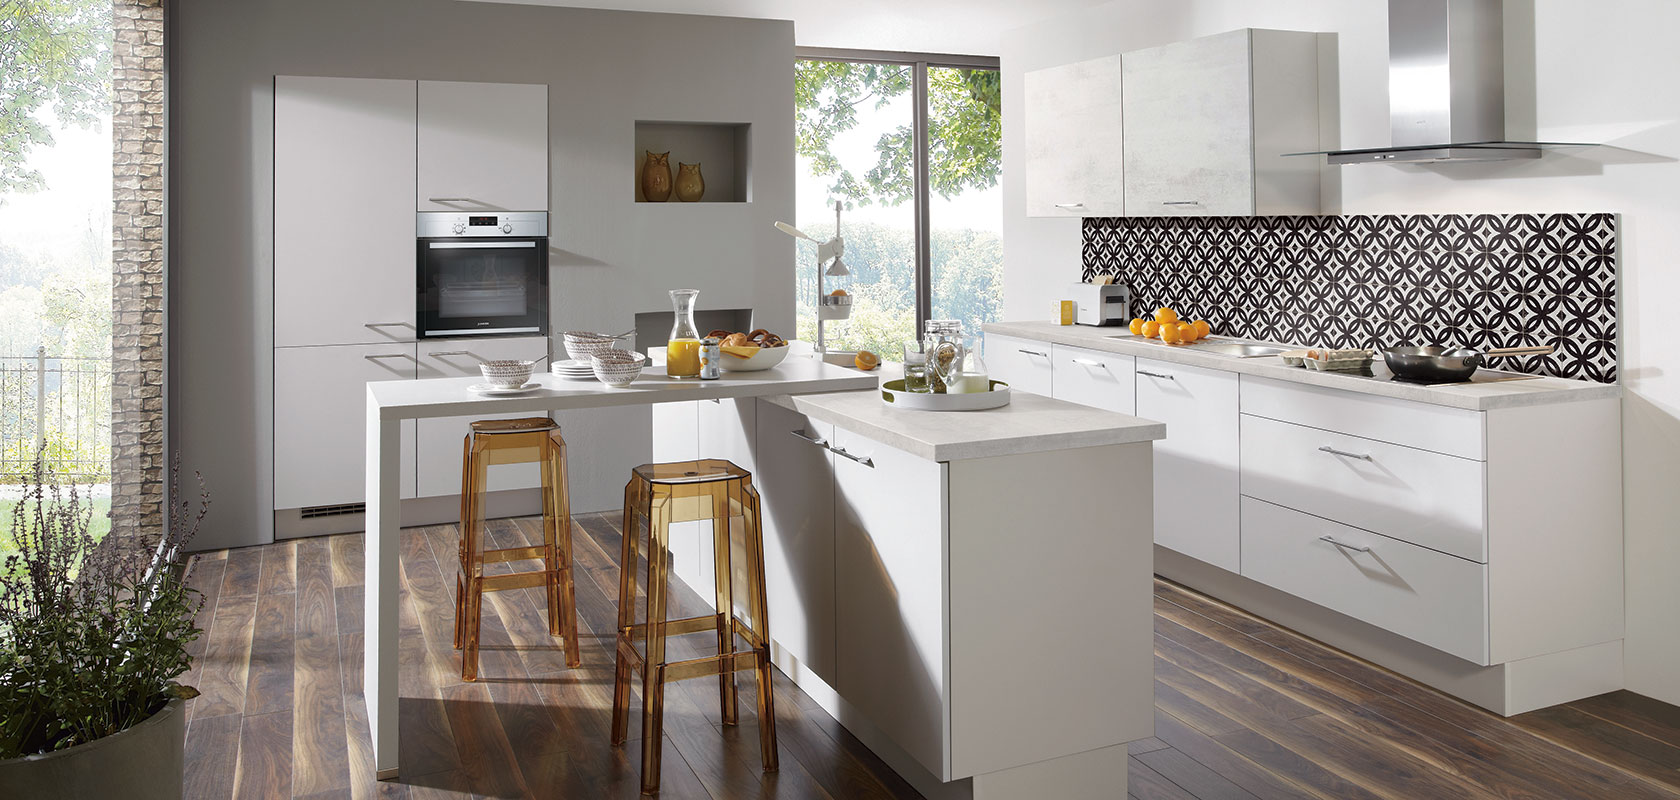 Moderne Küche mit weißen Schränken, Edelstahlgeräten, gemustertem Rückwand, und einer Frühstücksbar mit Hockern neben einem großen Fenster.